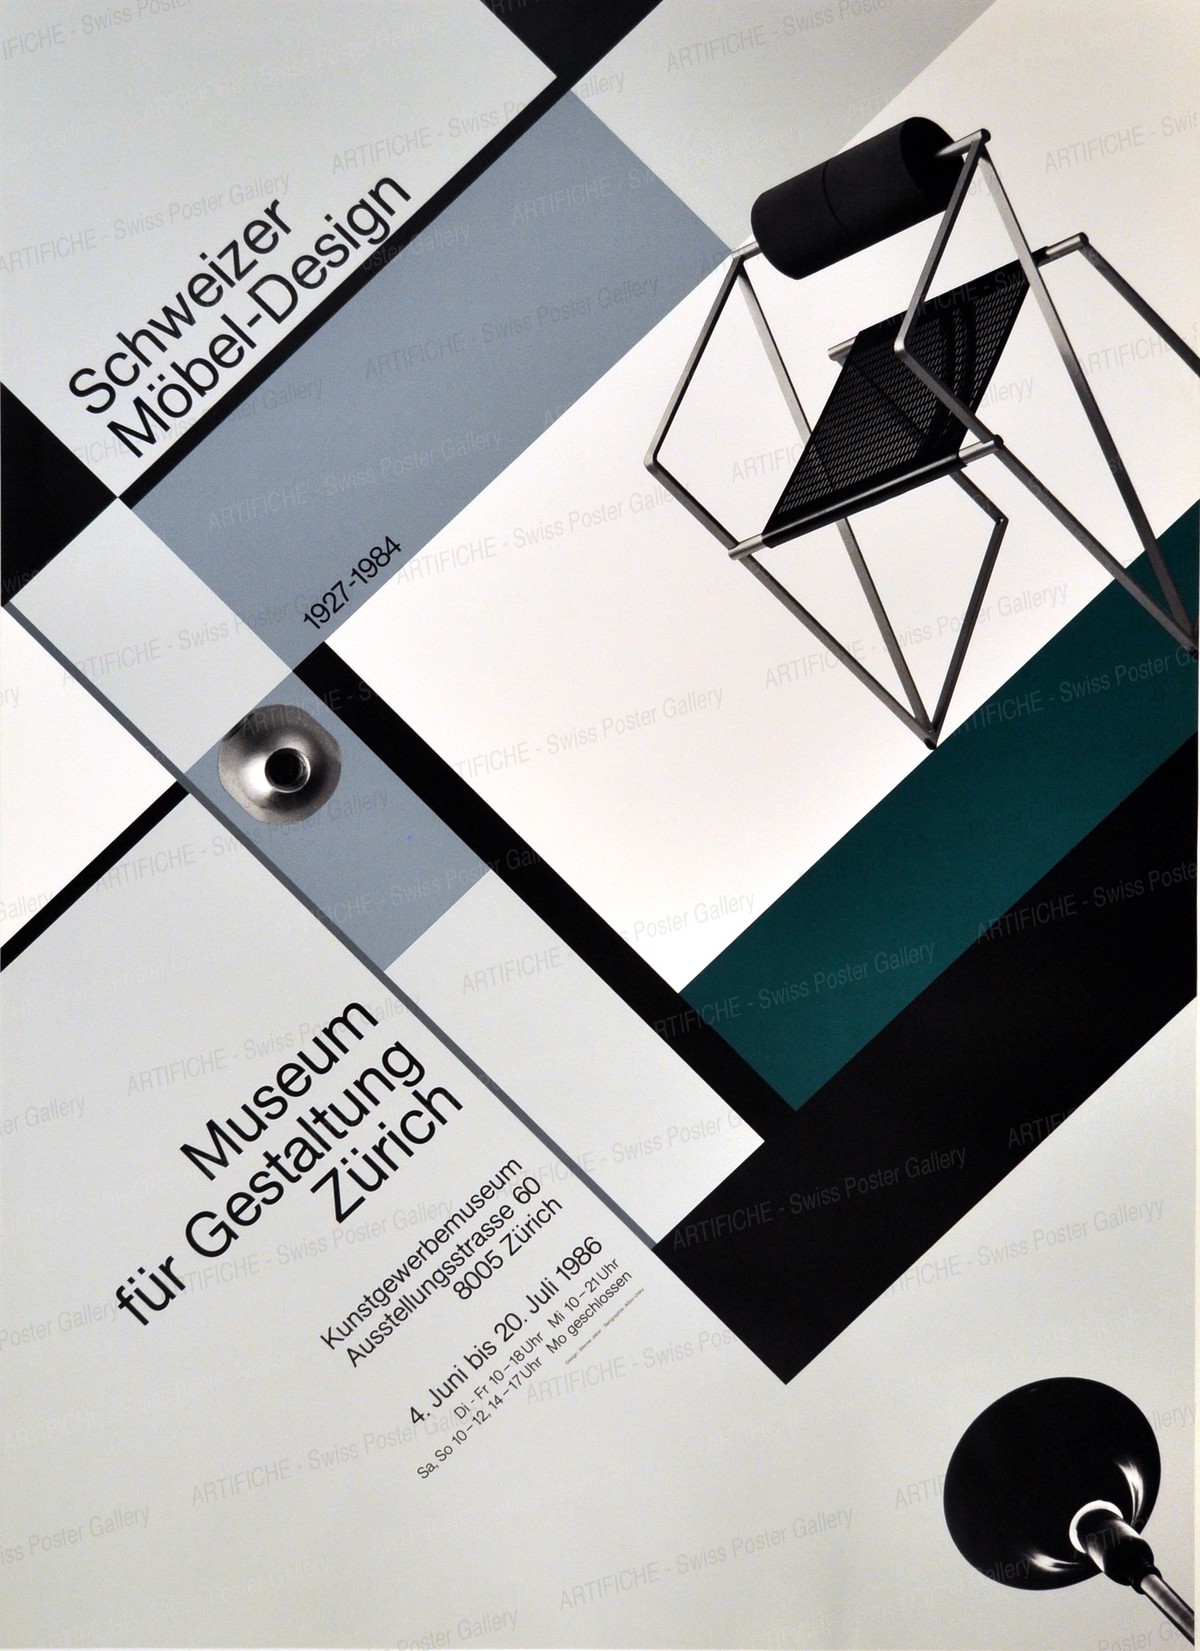 Museum für Gestaltung Zürich – Schweizer Möbel Design 1927 – 1984, Werner Jeker